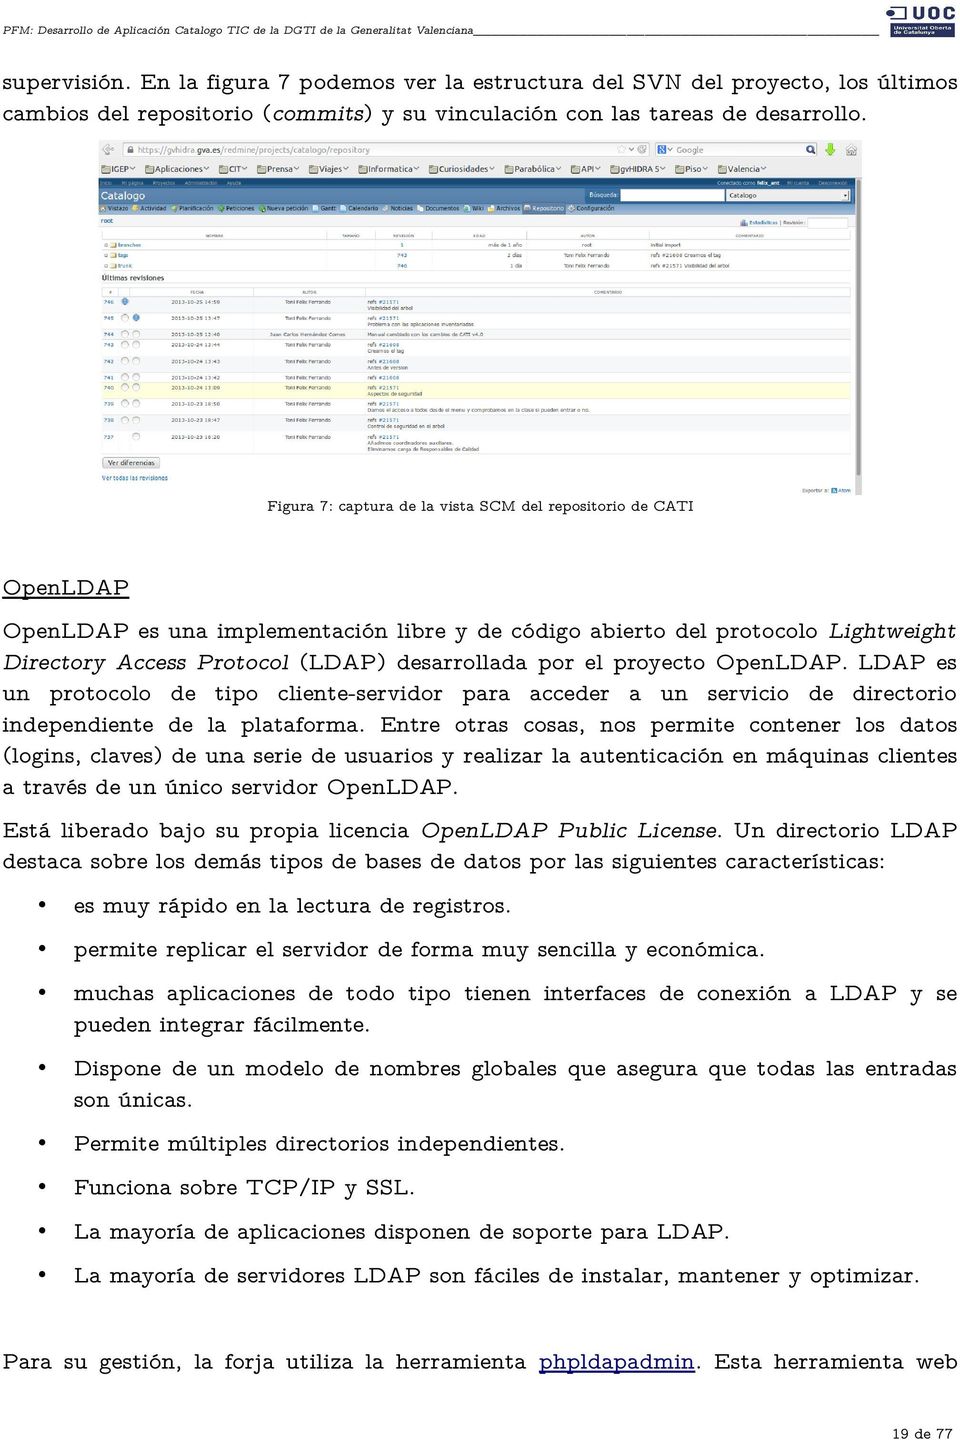 el proyecto OpenLDAP. LDAP es un protocolo de tipo cliente-servidor para acceder a un servicio de directorio independiente de la plataforma.